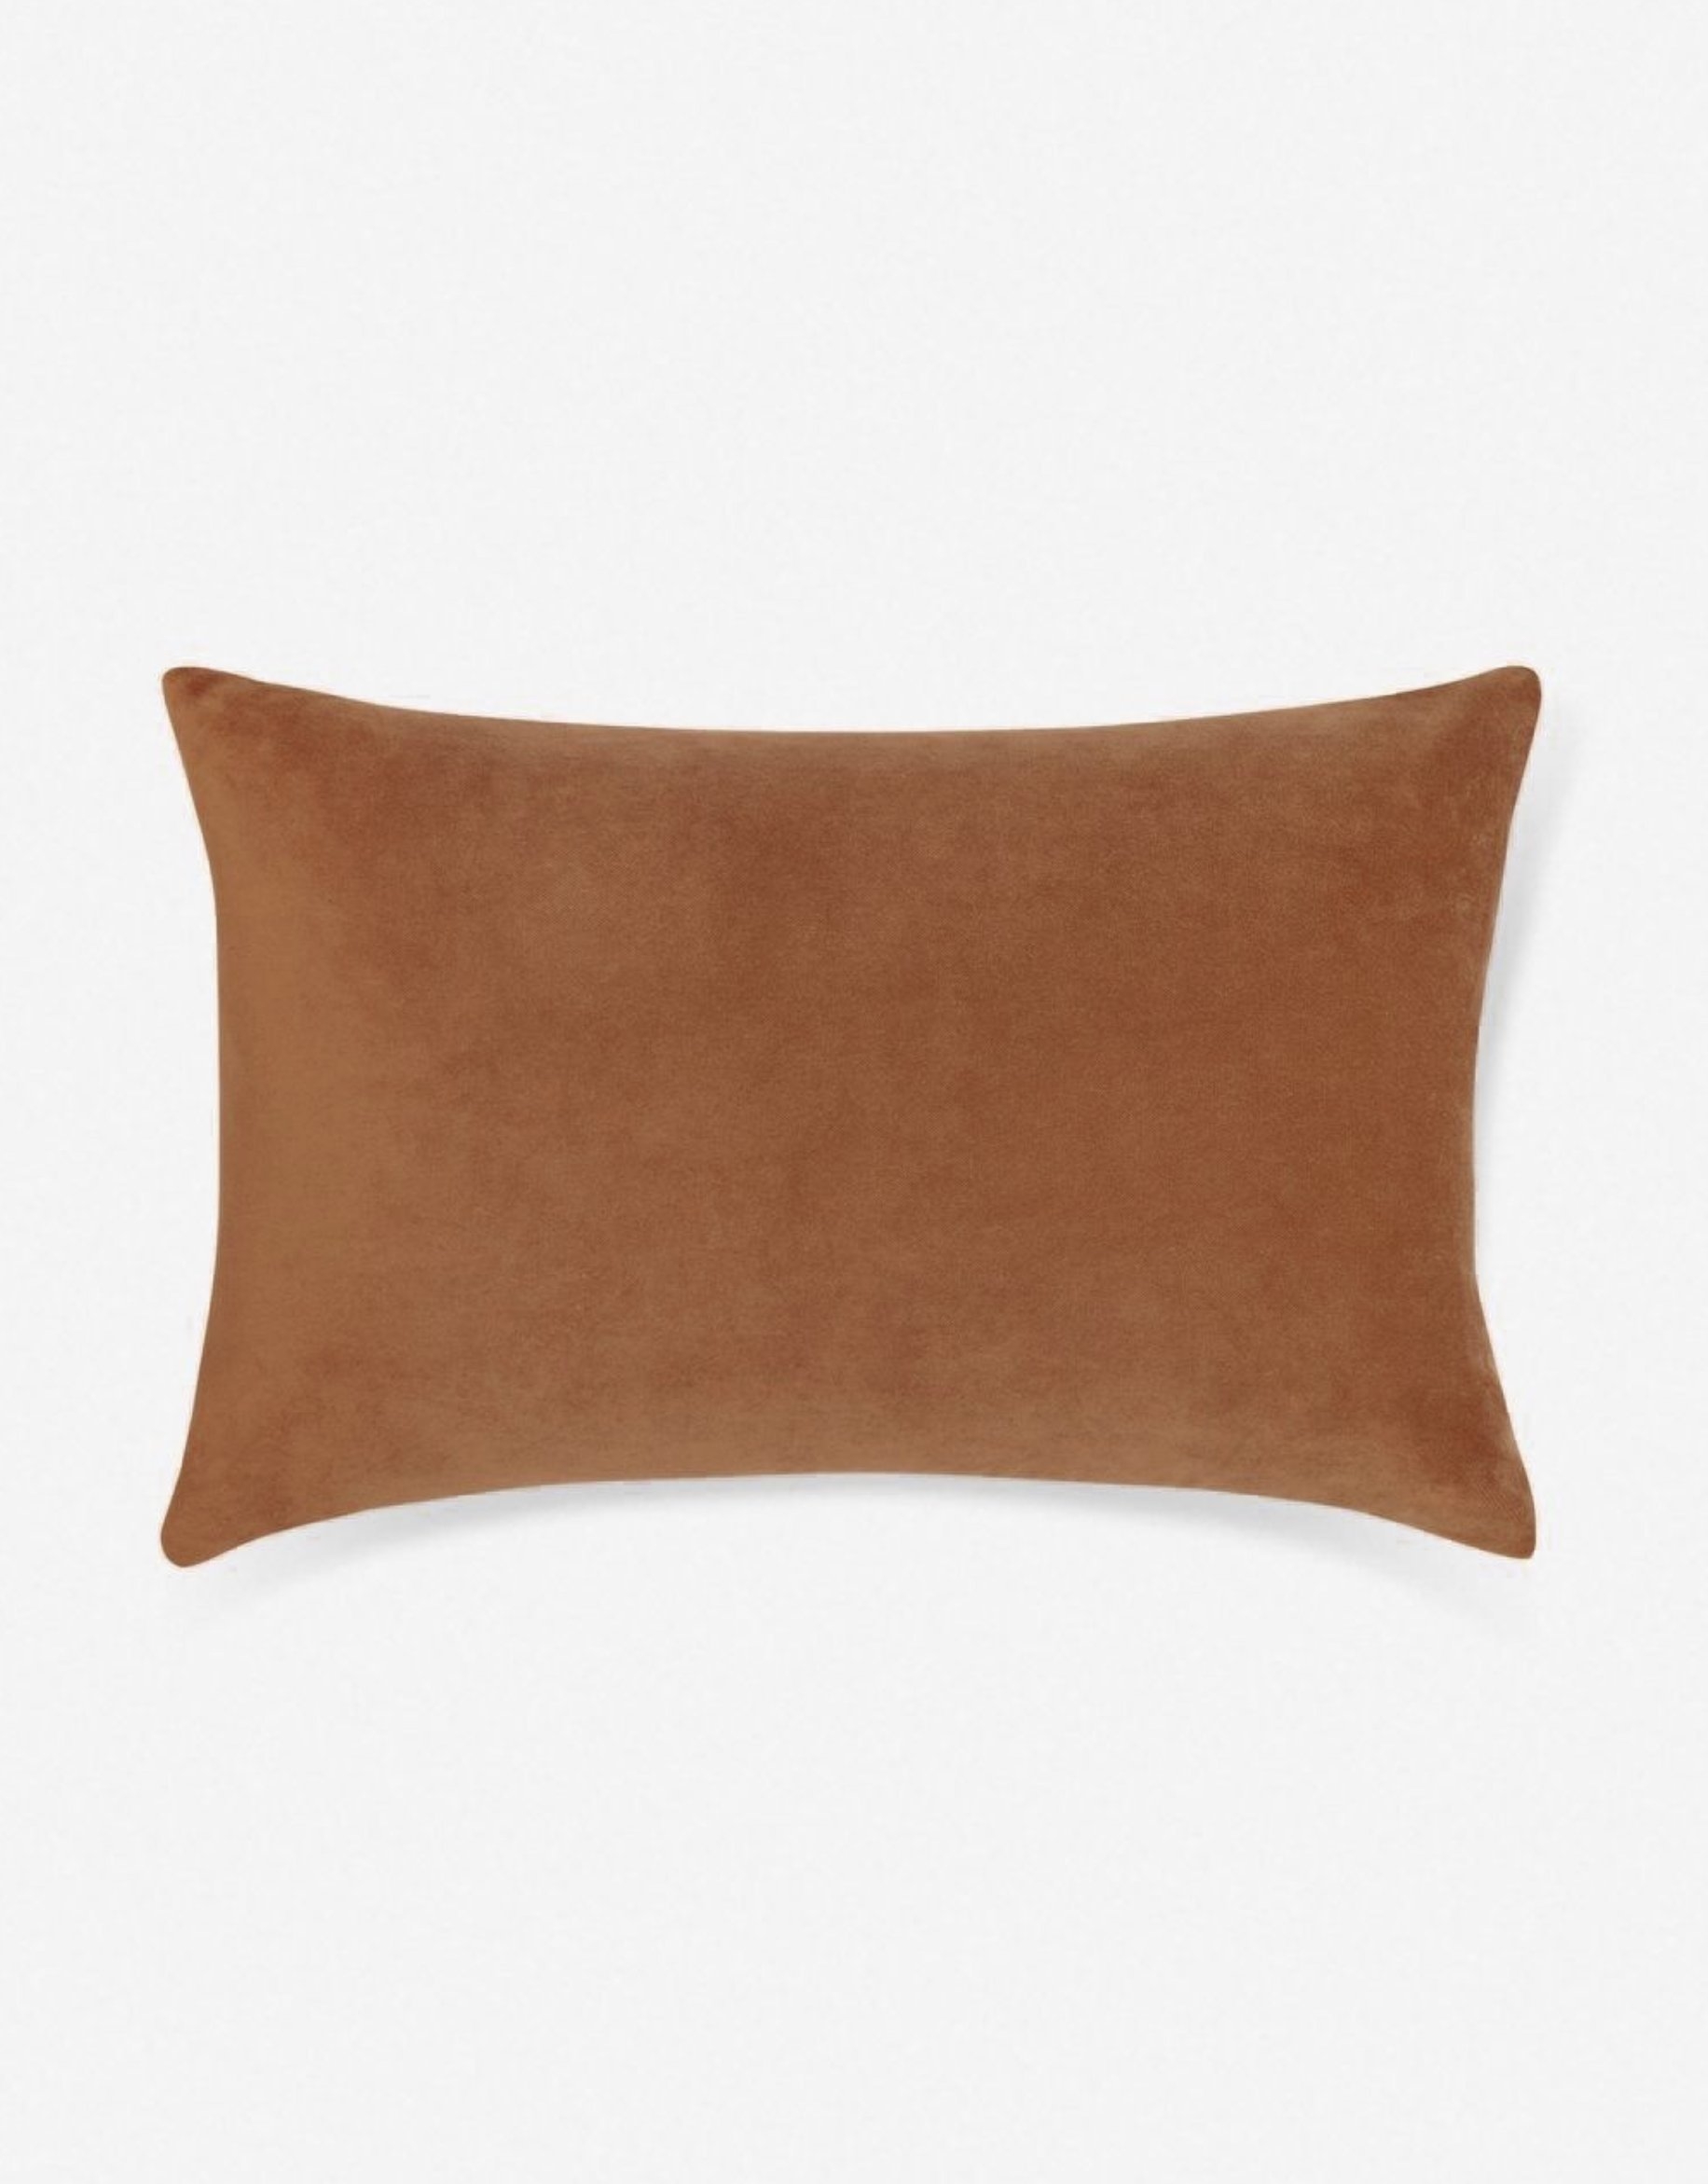 Charlotte Velvet Lumbar Pillow, Burnt Orange, 13" x 20" - Image 0